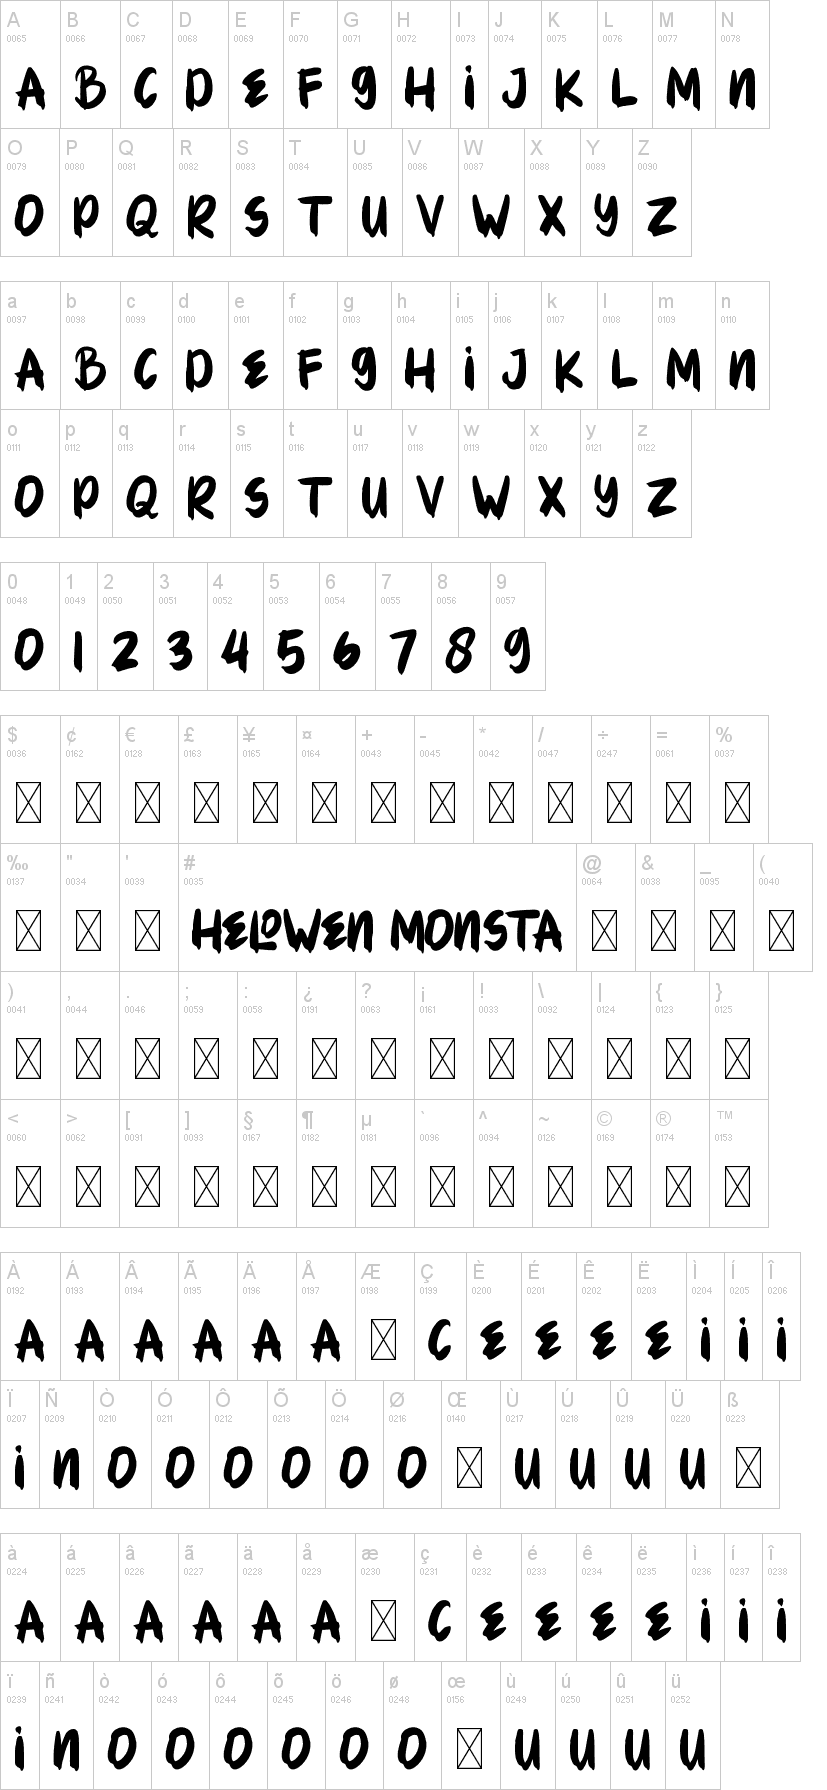 Helowen Monsta字符映射图